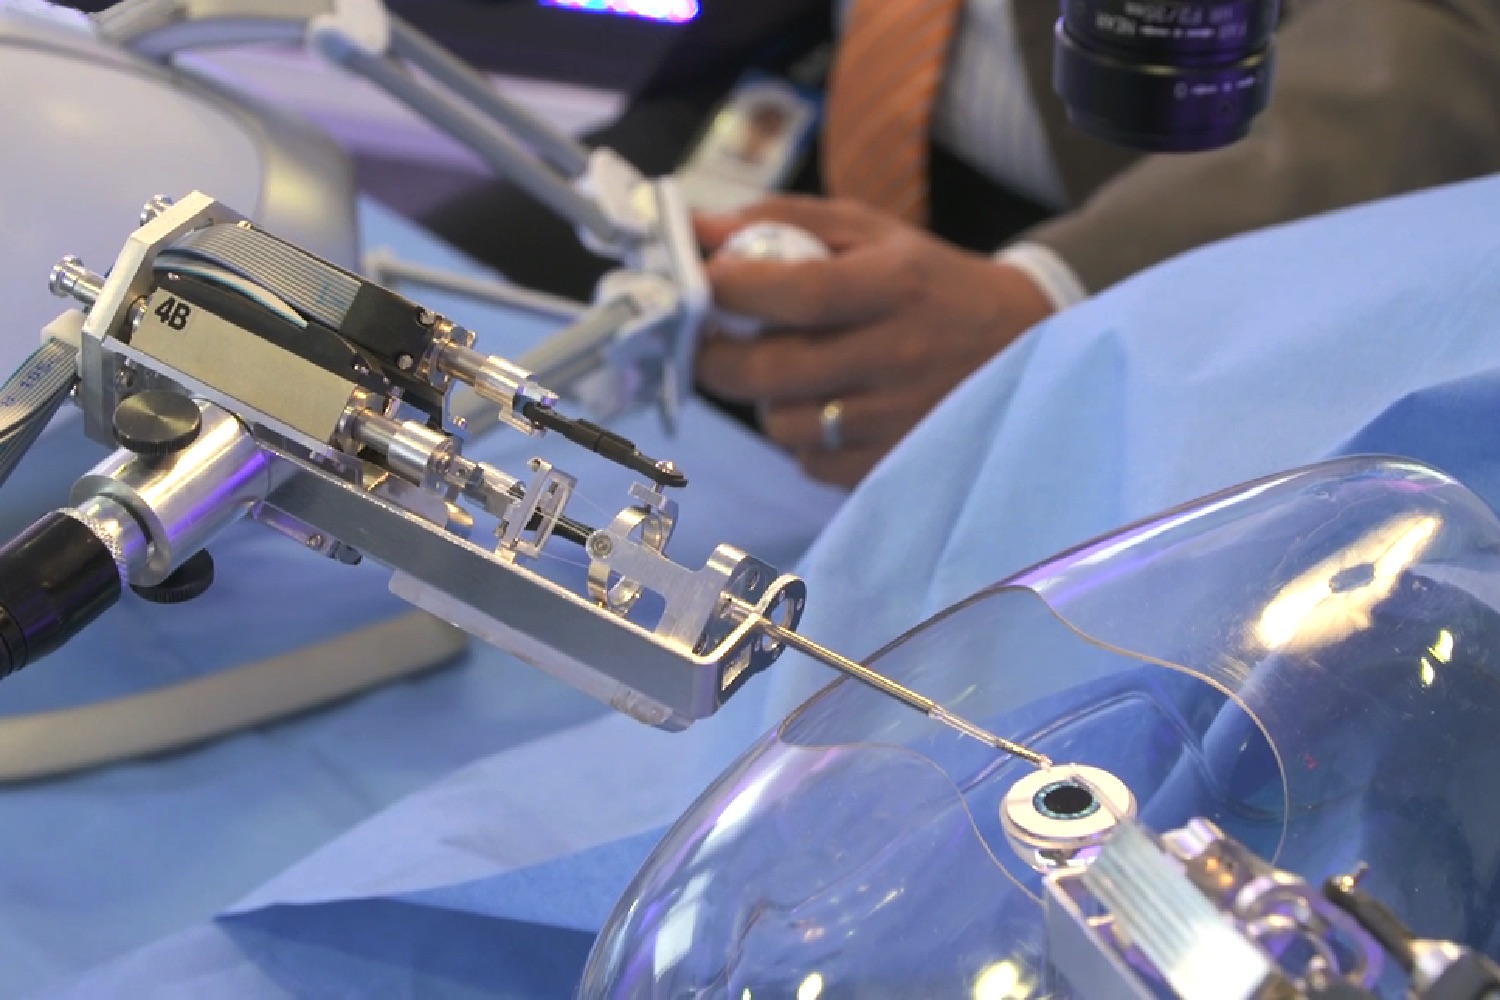 cataract surgery robot axsis2